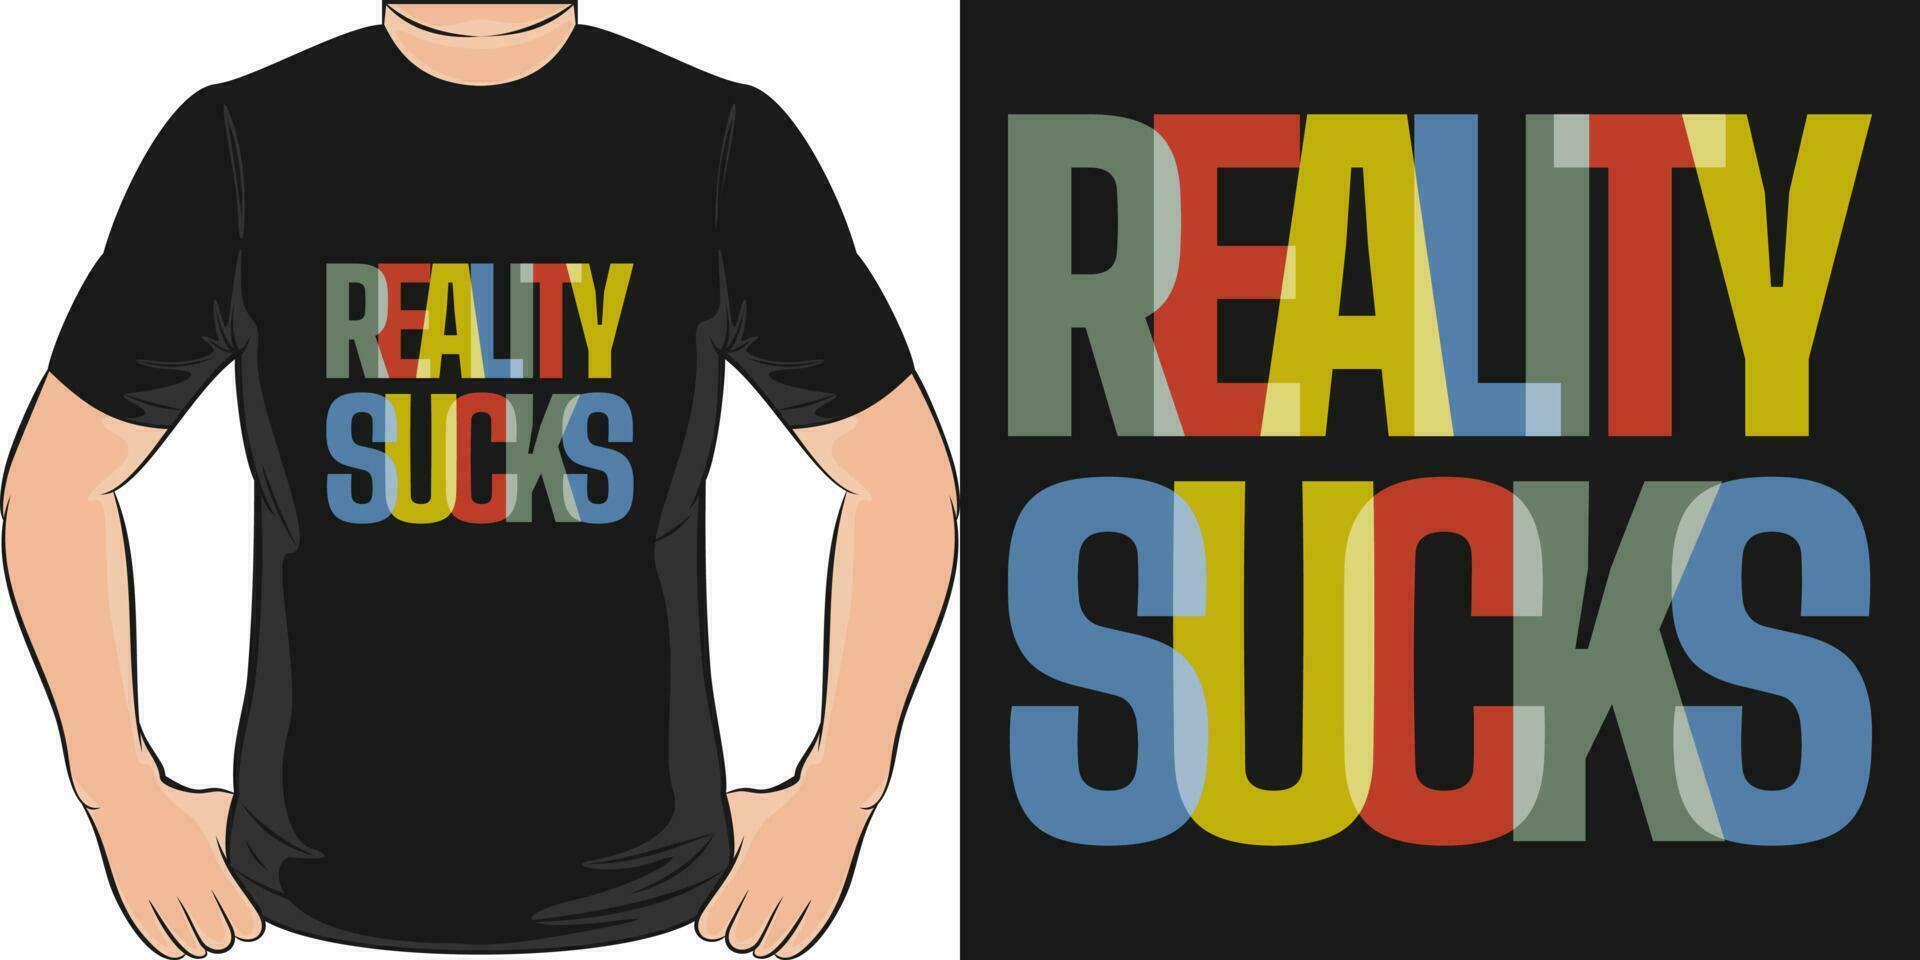 verklighet suger, rolig Citat t-shirt design. vektor